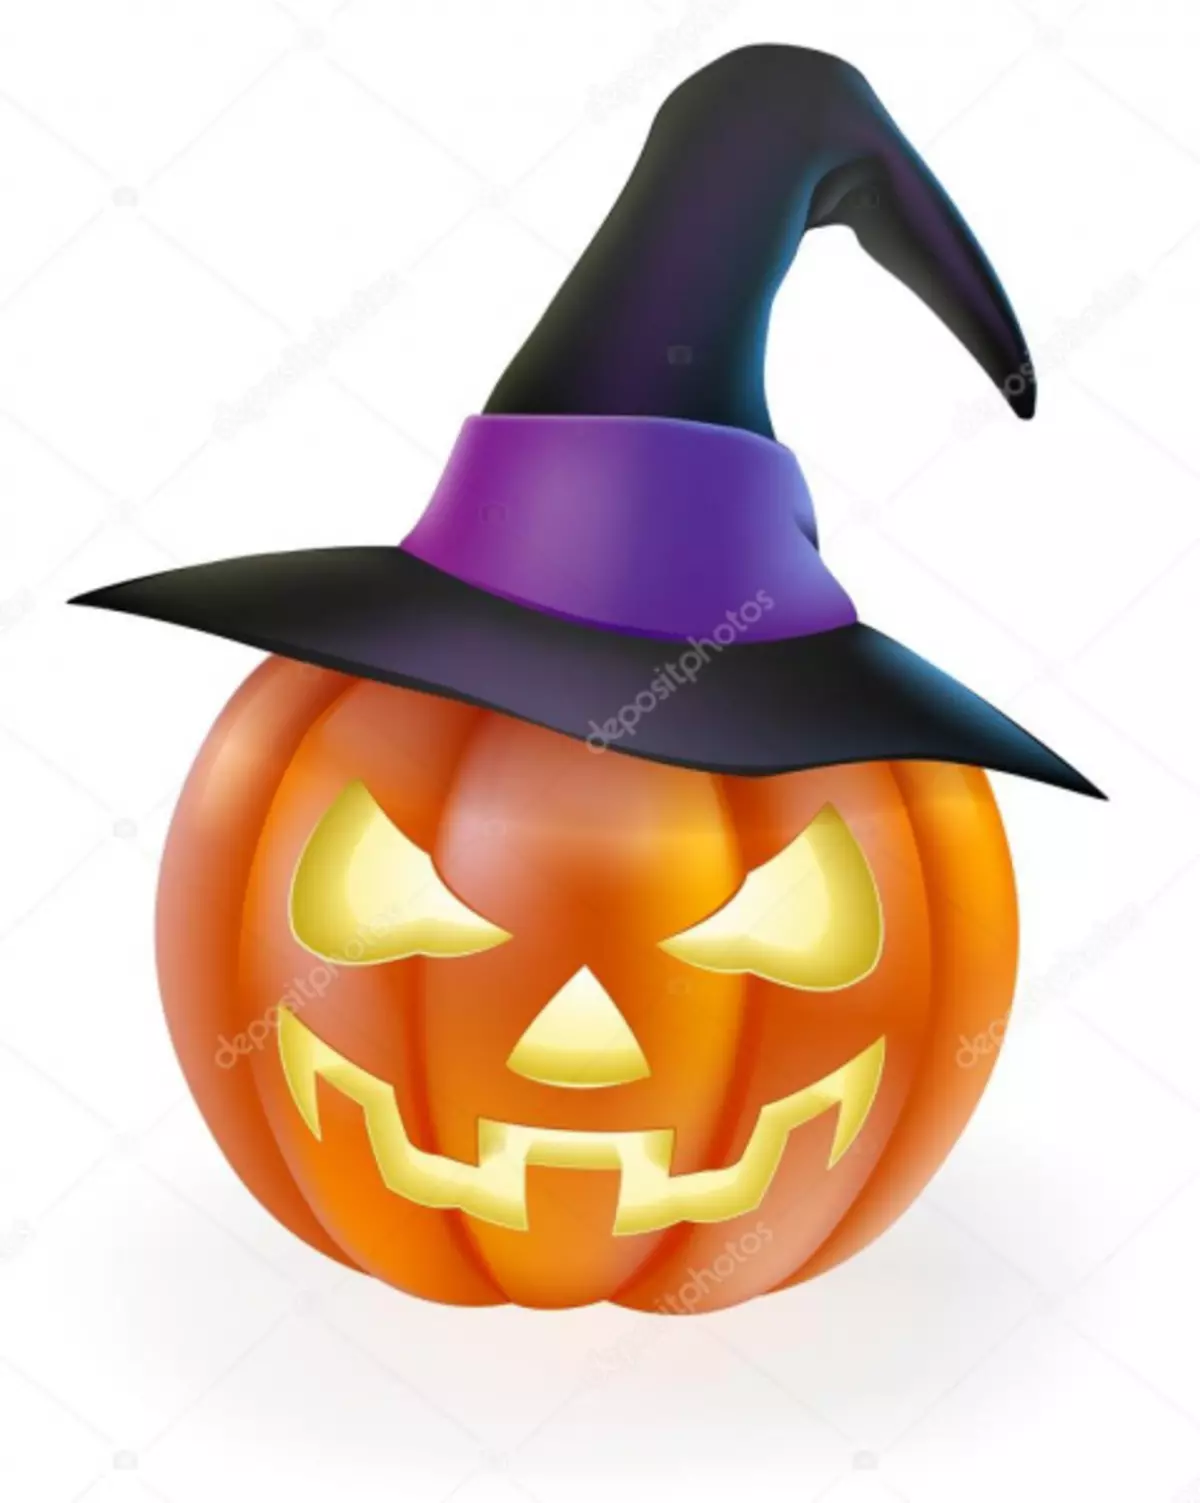 Sombrero de brujas, hágalo usted mismo en Halloween con fotos y videos.